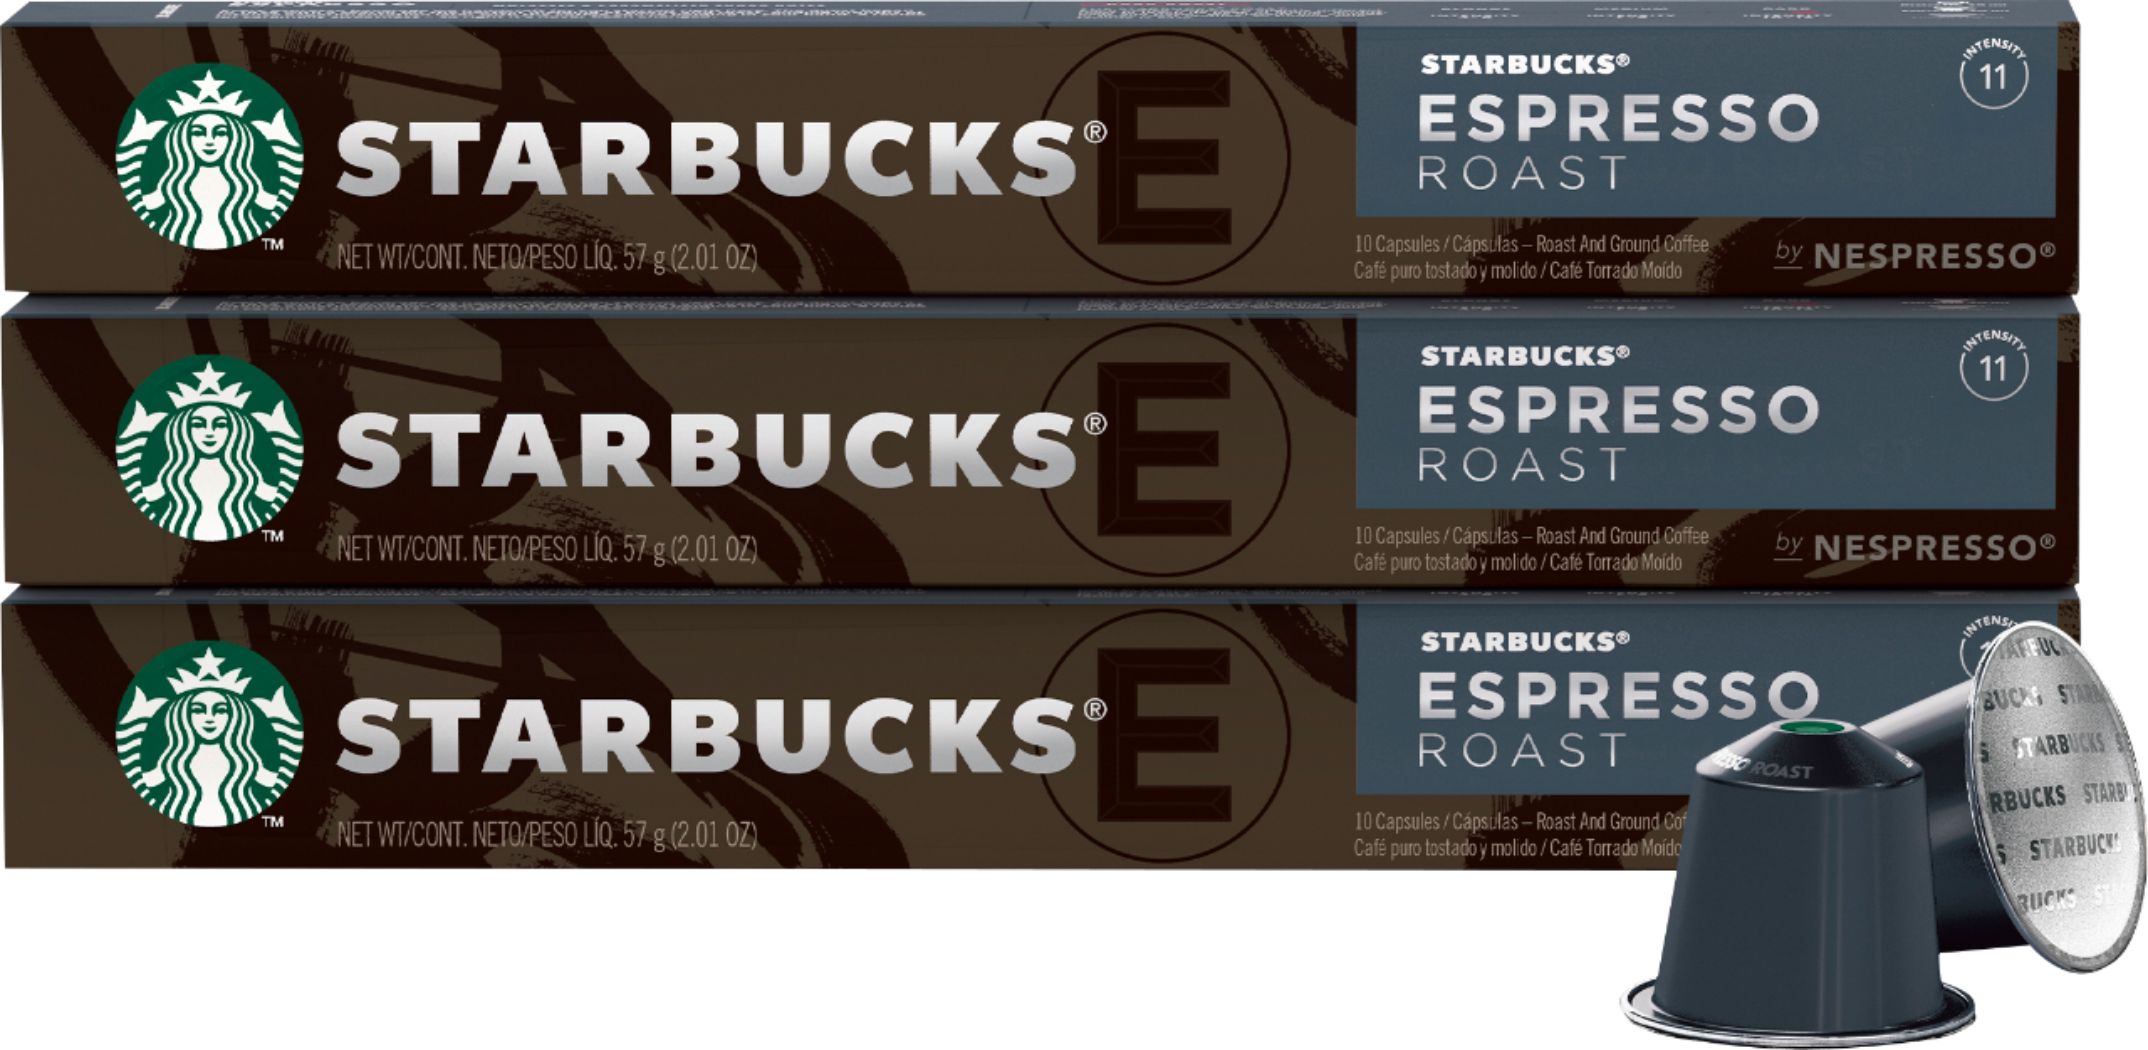 Starbucks by Nespresso Espresso Roast Review for OL Machine : r